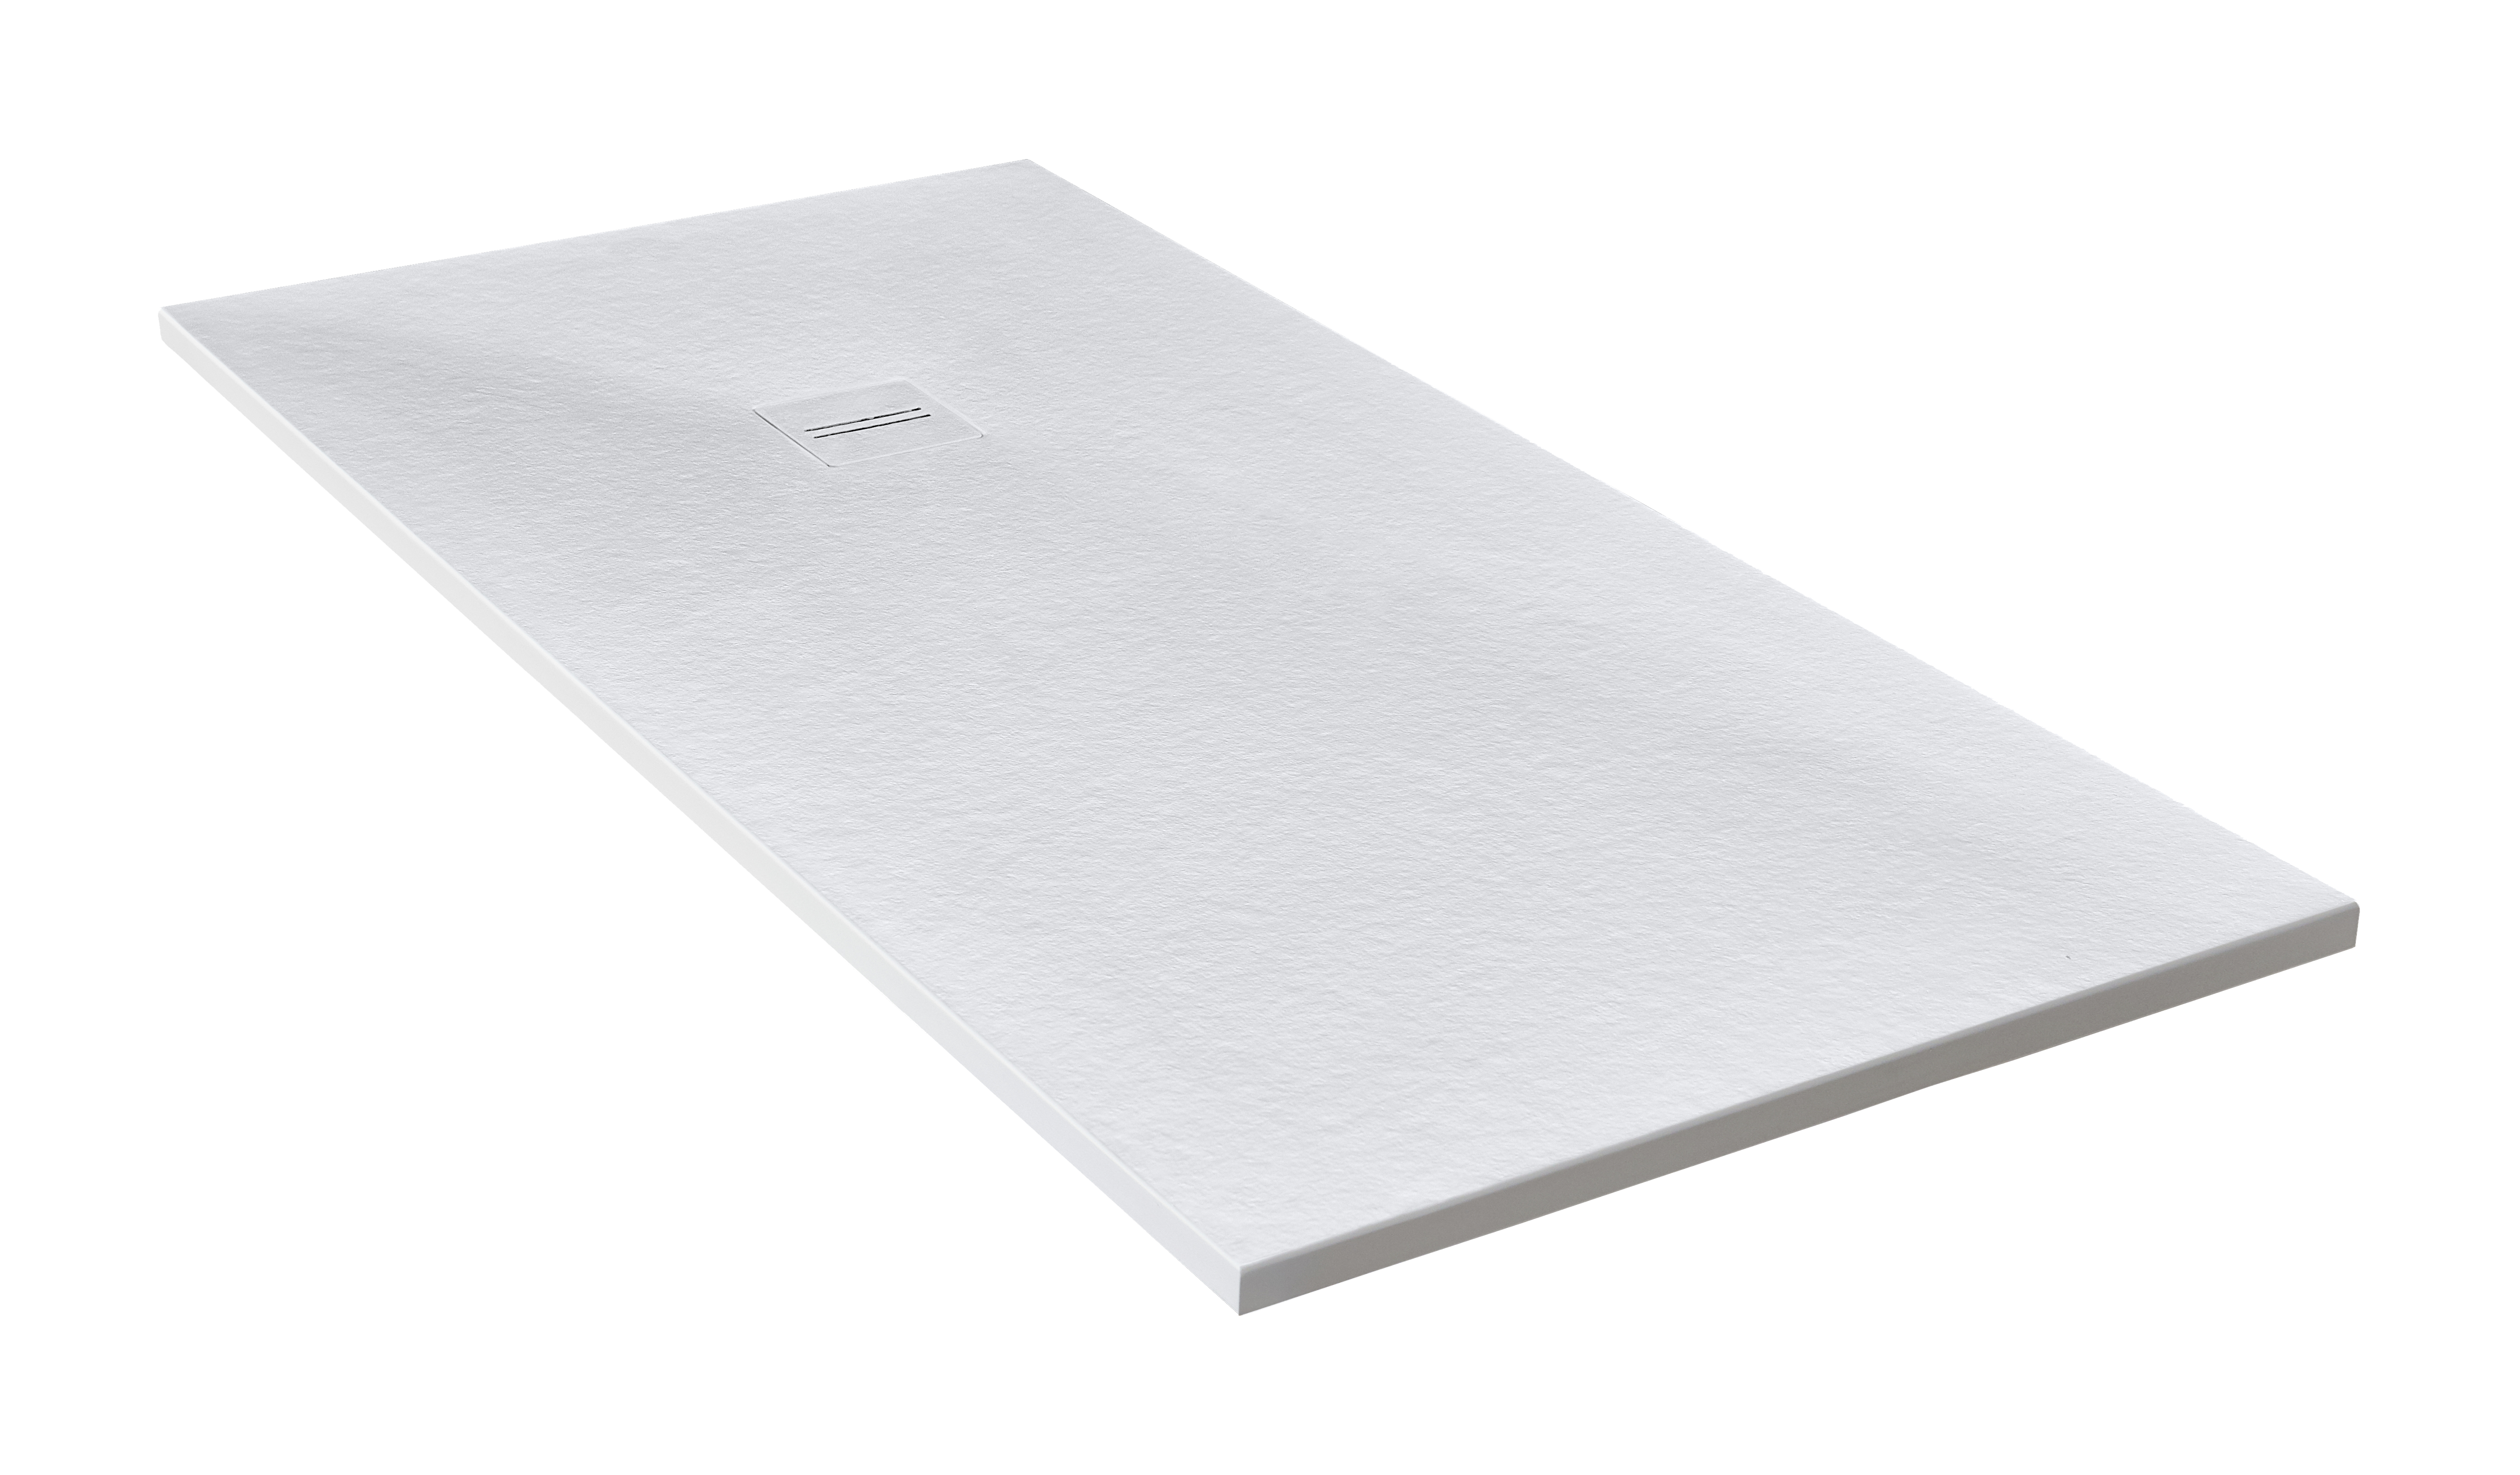 Plato de ducha cosmos 210x90 cm blanco